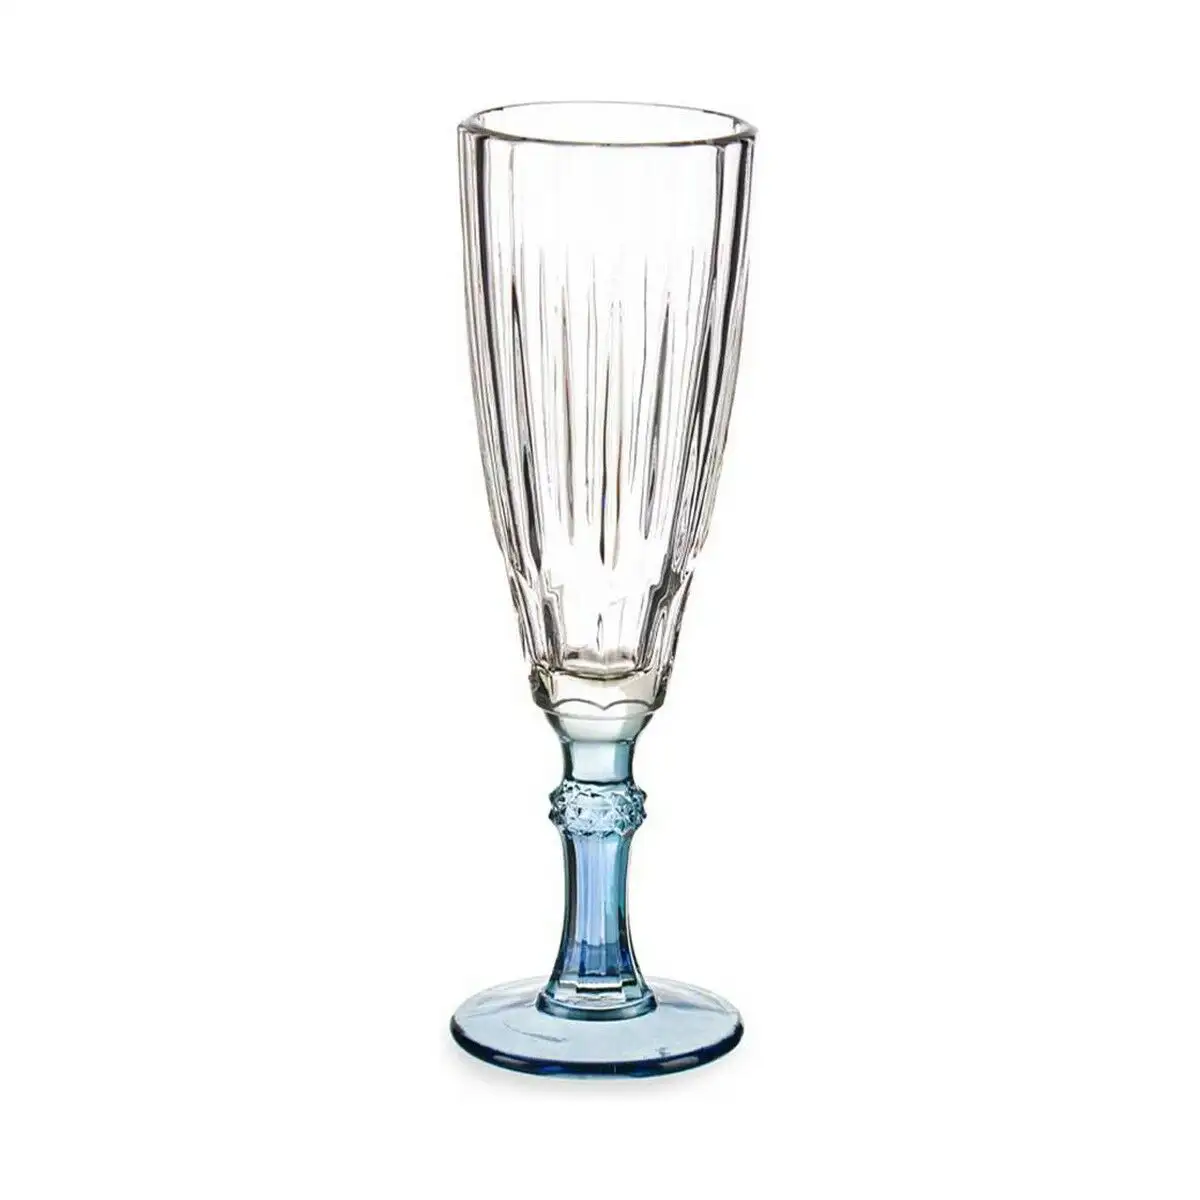 Coupe de champagne exotic verre bleu 170 ml_9689. Plongez dans l'Univers de DIAYTAR SENEGAL - Où la Qualité et la Diversité se rencontrent. Parcourez nos rayons virtuels pour trouver des produits répondant à tous les besoins, du confort de votre foyer.